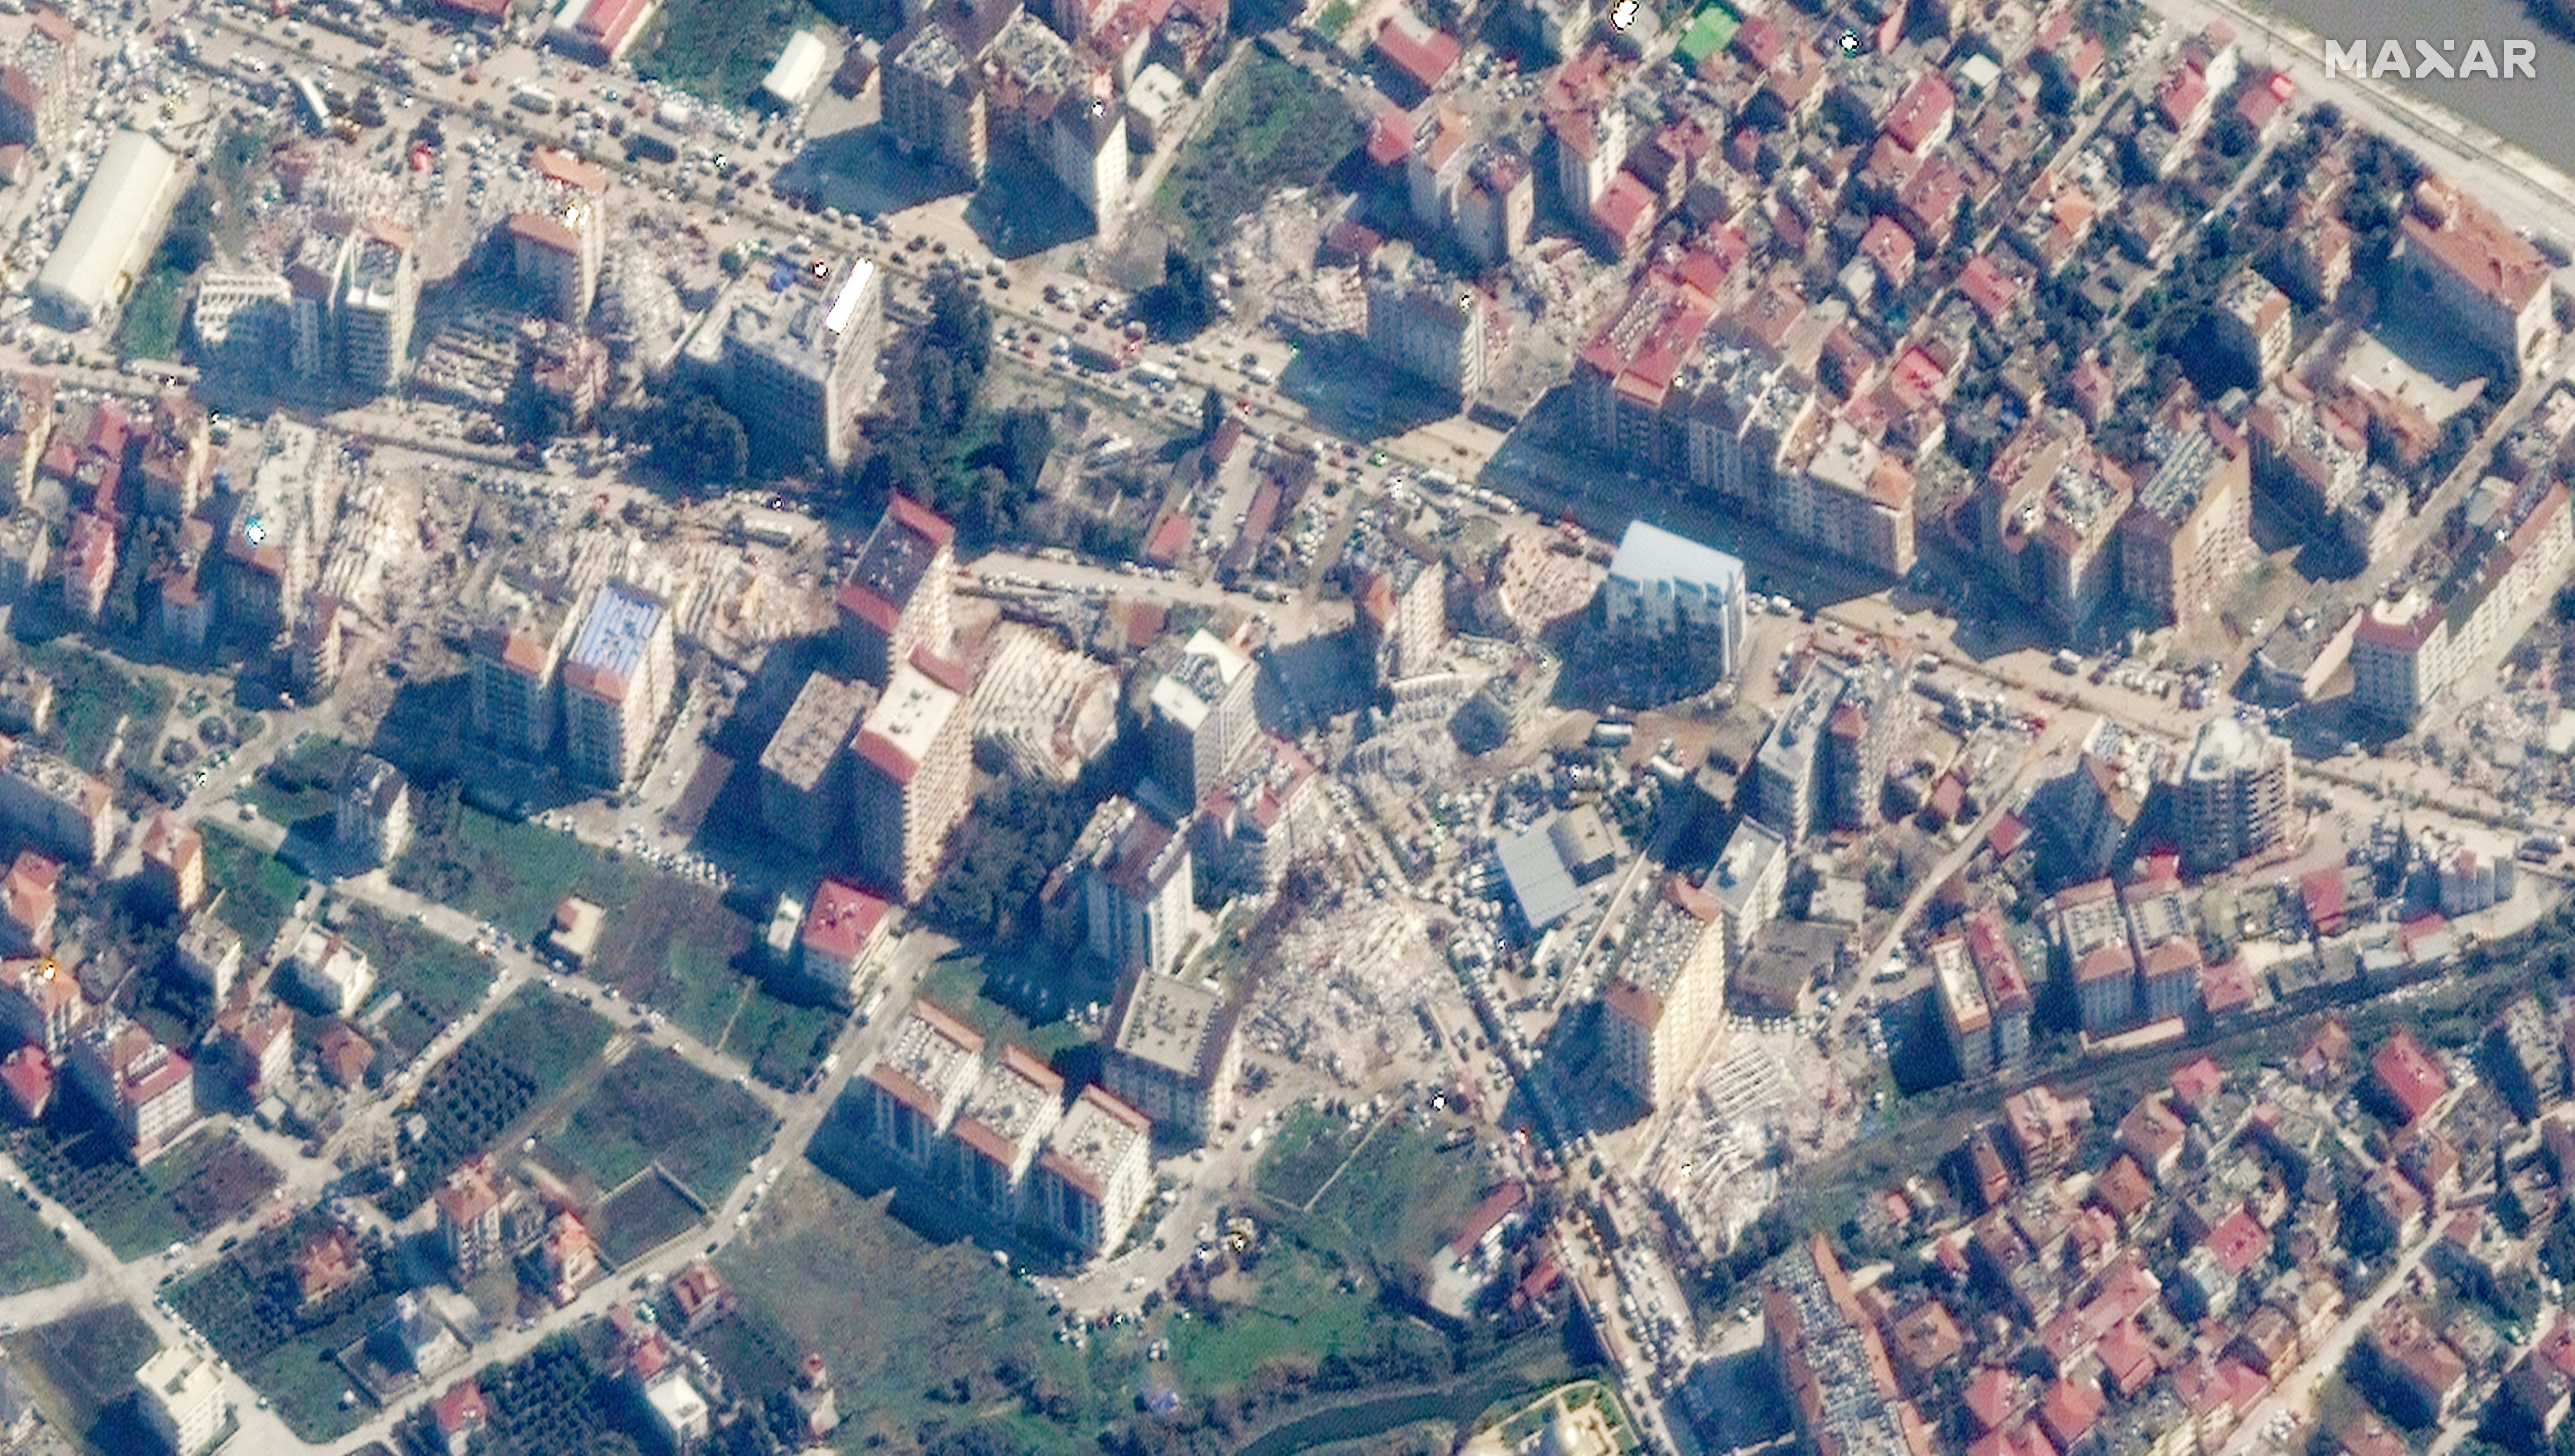 Luego del terremoto, una imagen satelital muestra edificios derrumbados en Antakya, Turquía, el 8 de febrero de 2023. Imagen satelital ©2023 Maxar Technologies/Handout via REUTERS